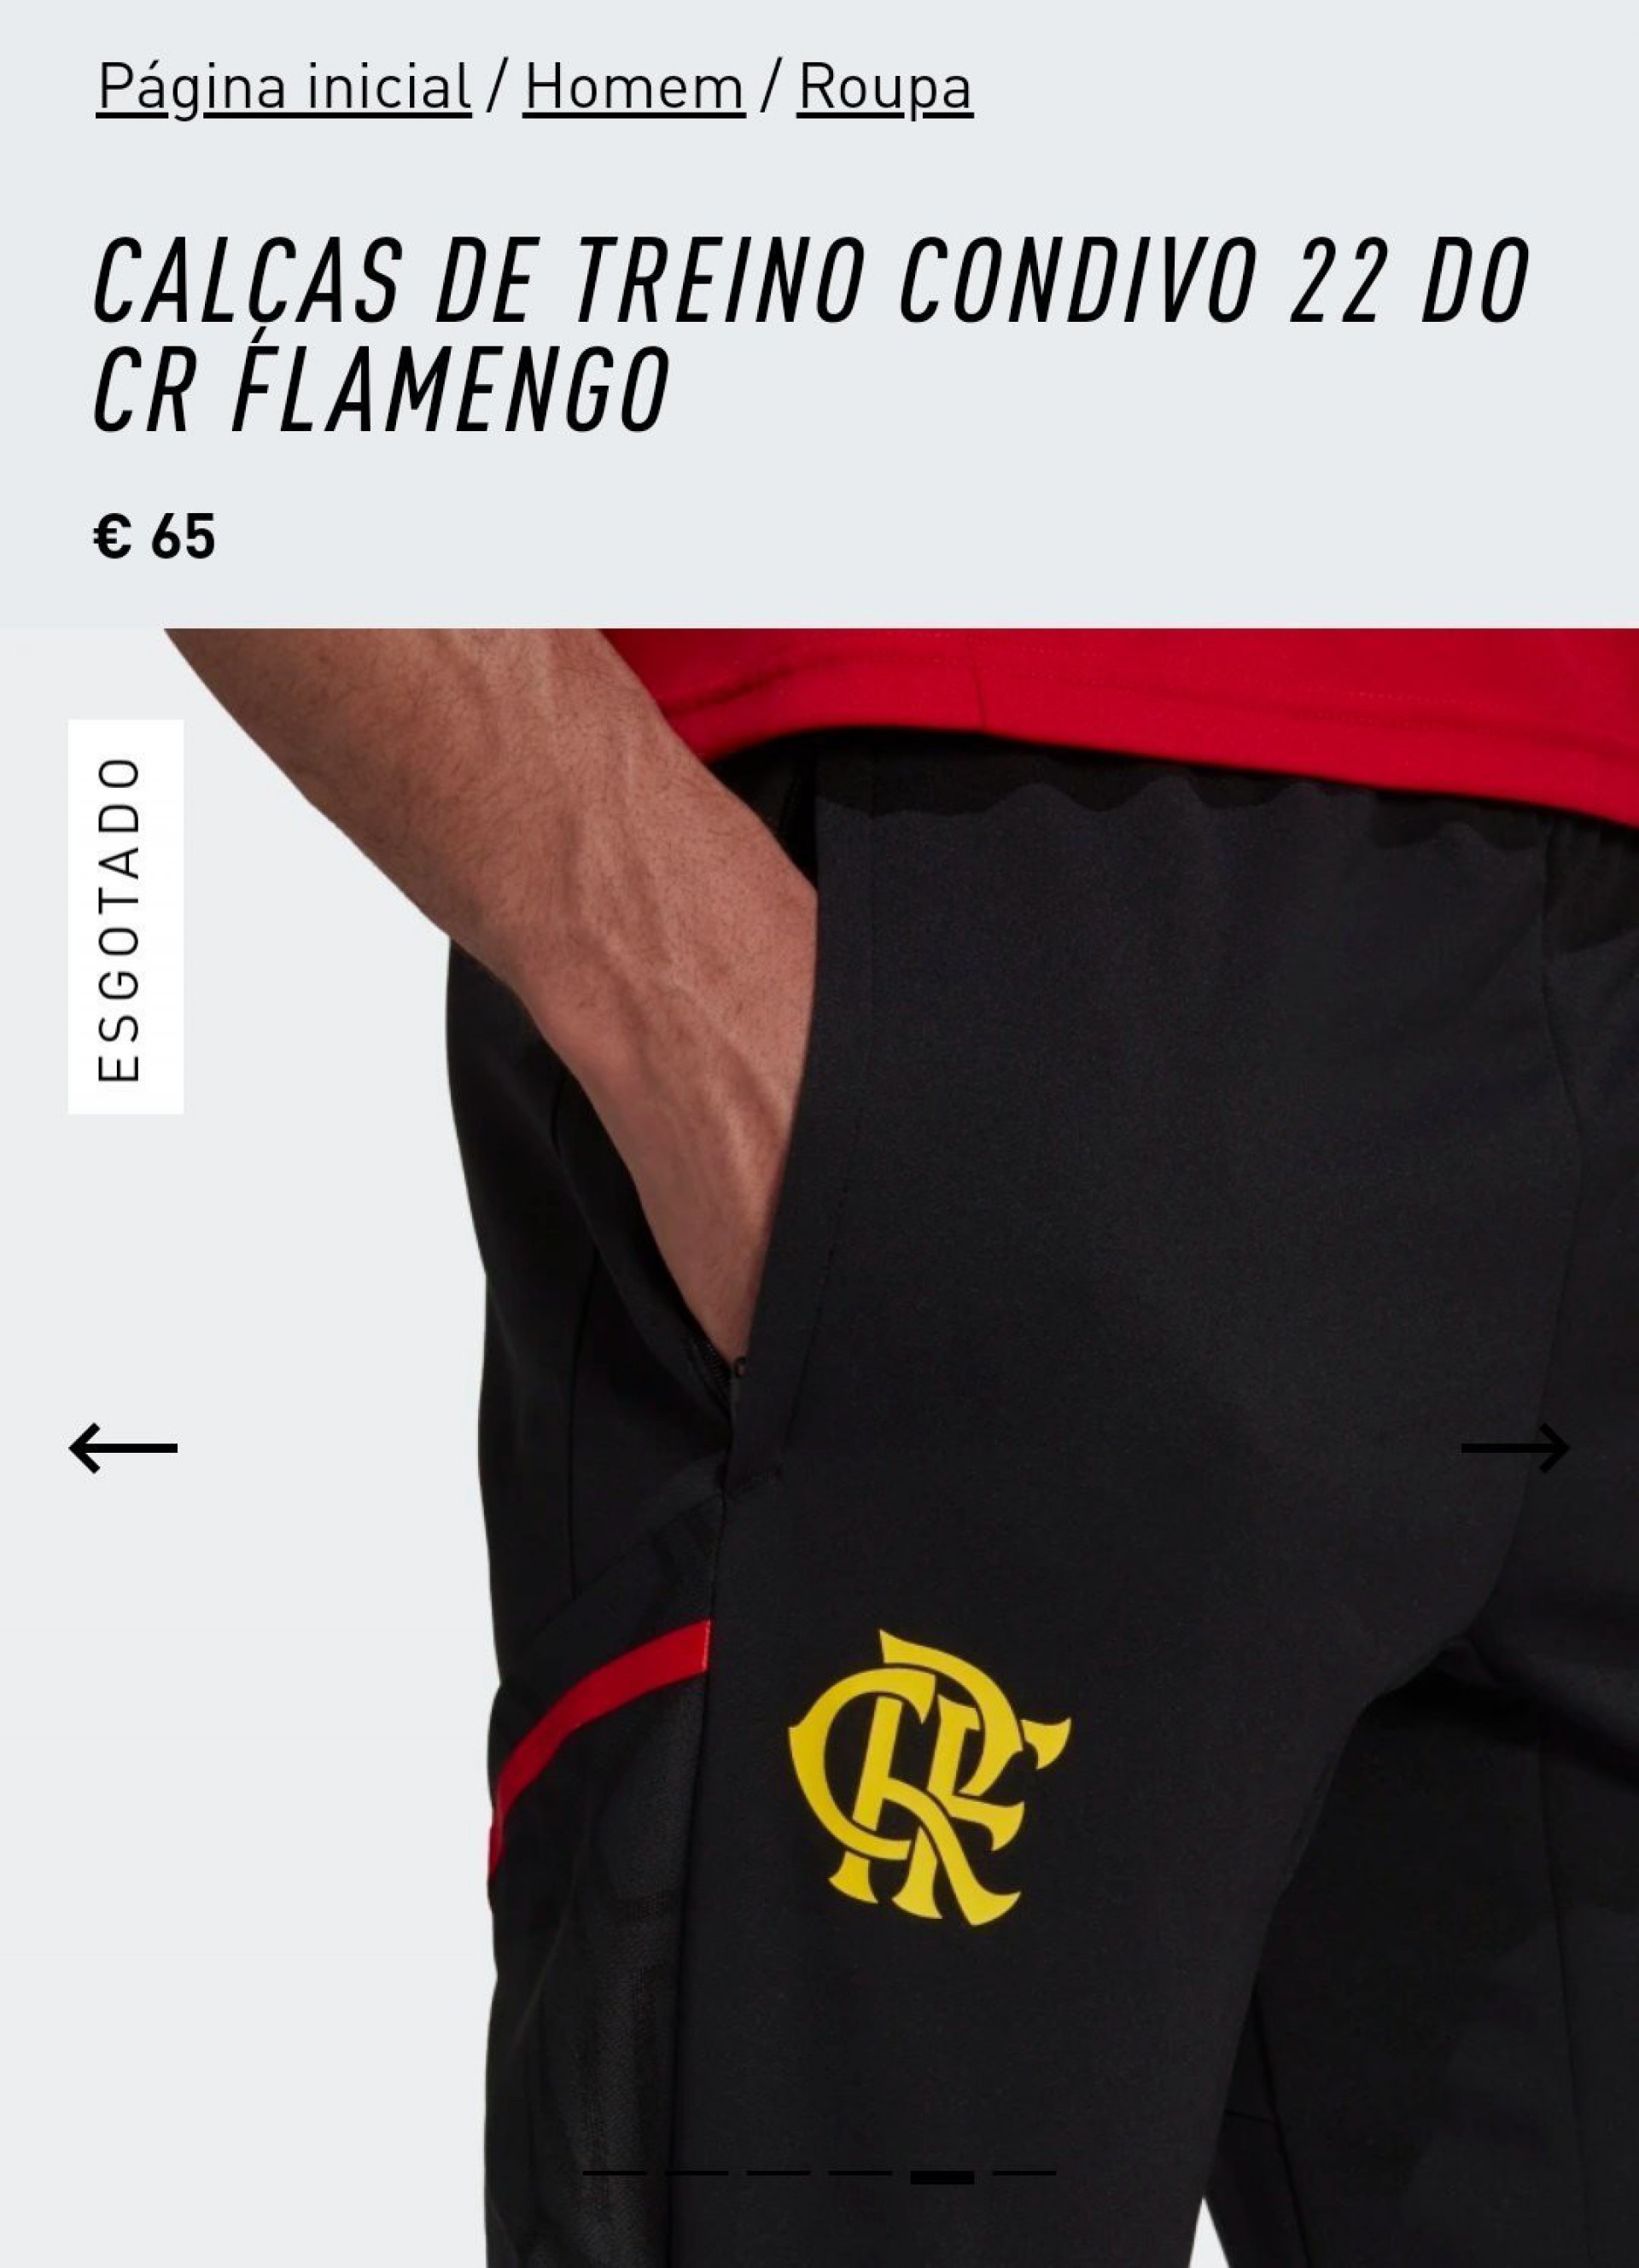 Nova calça do Flamengo - Reprodução/Adidas